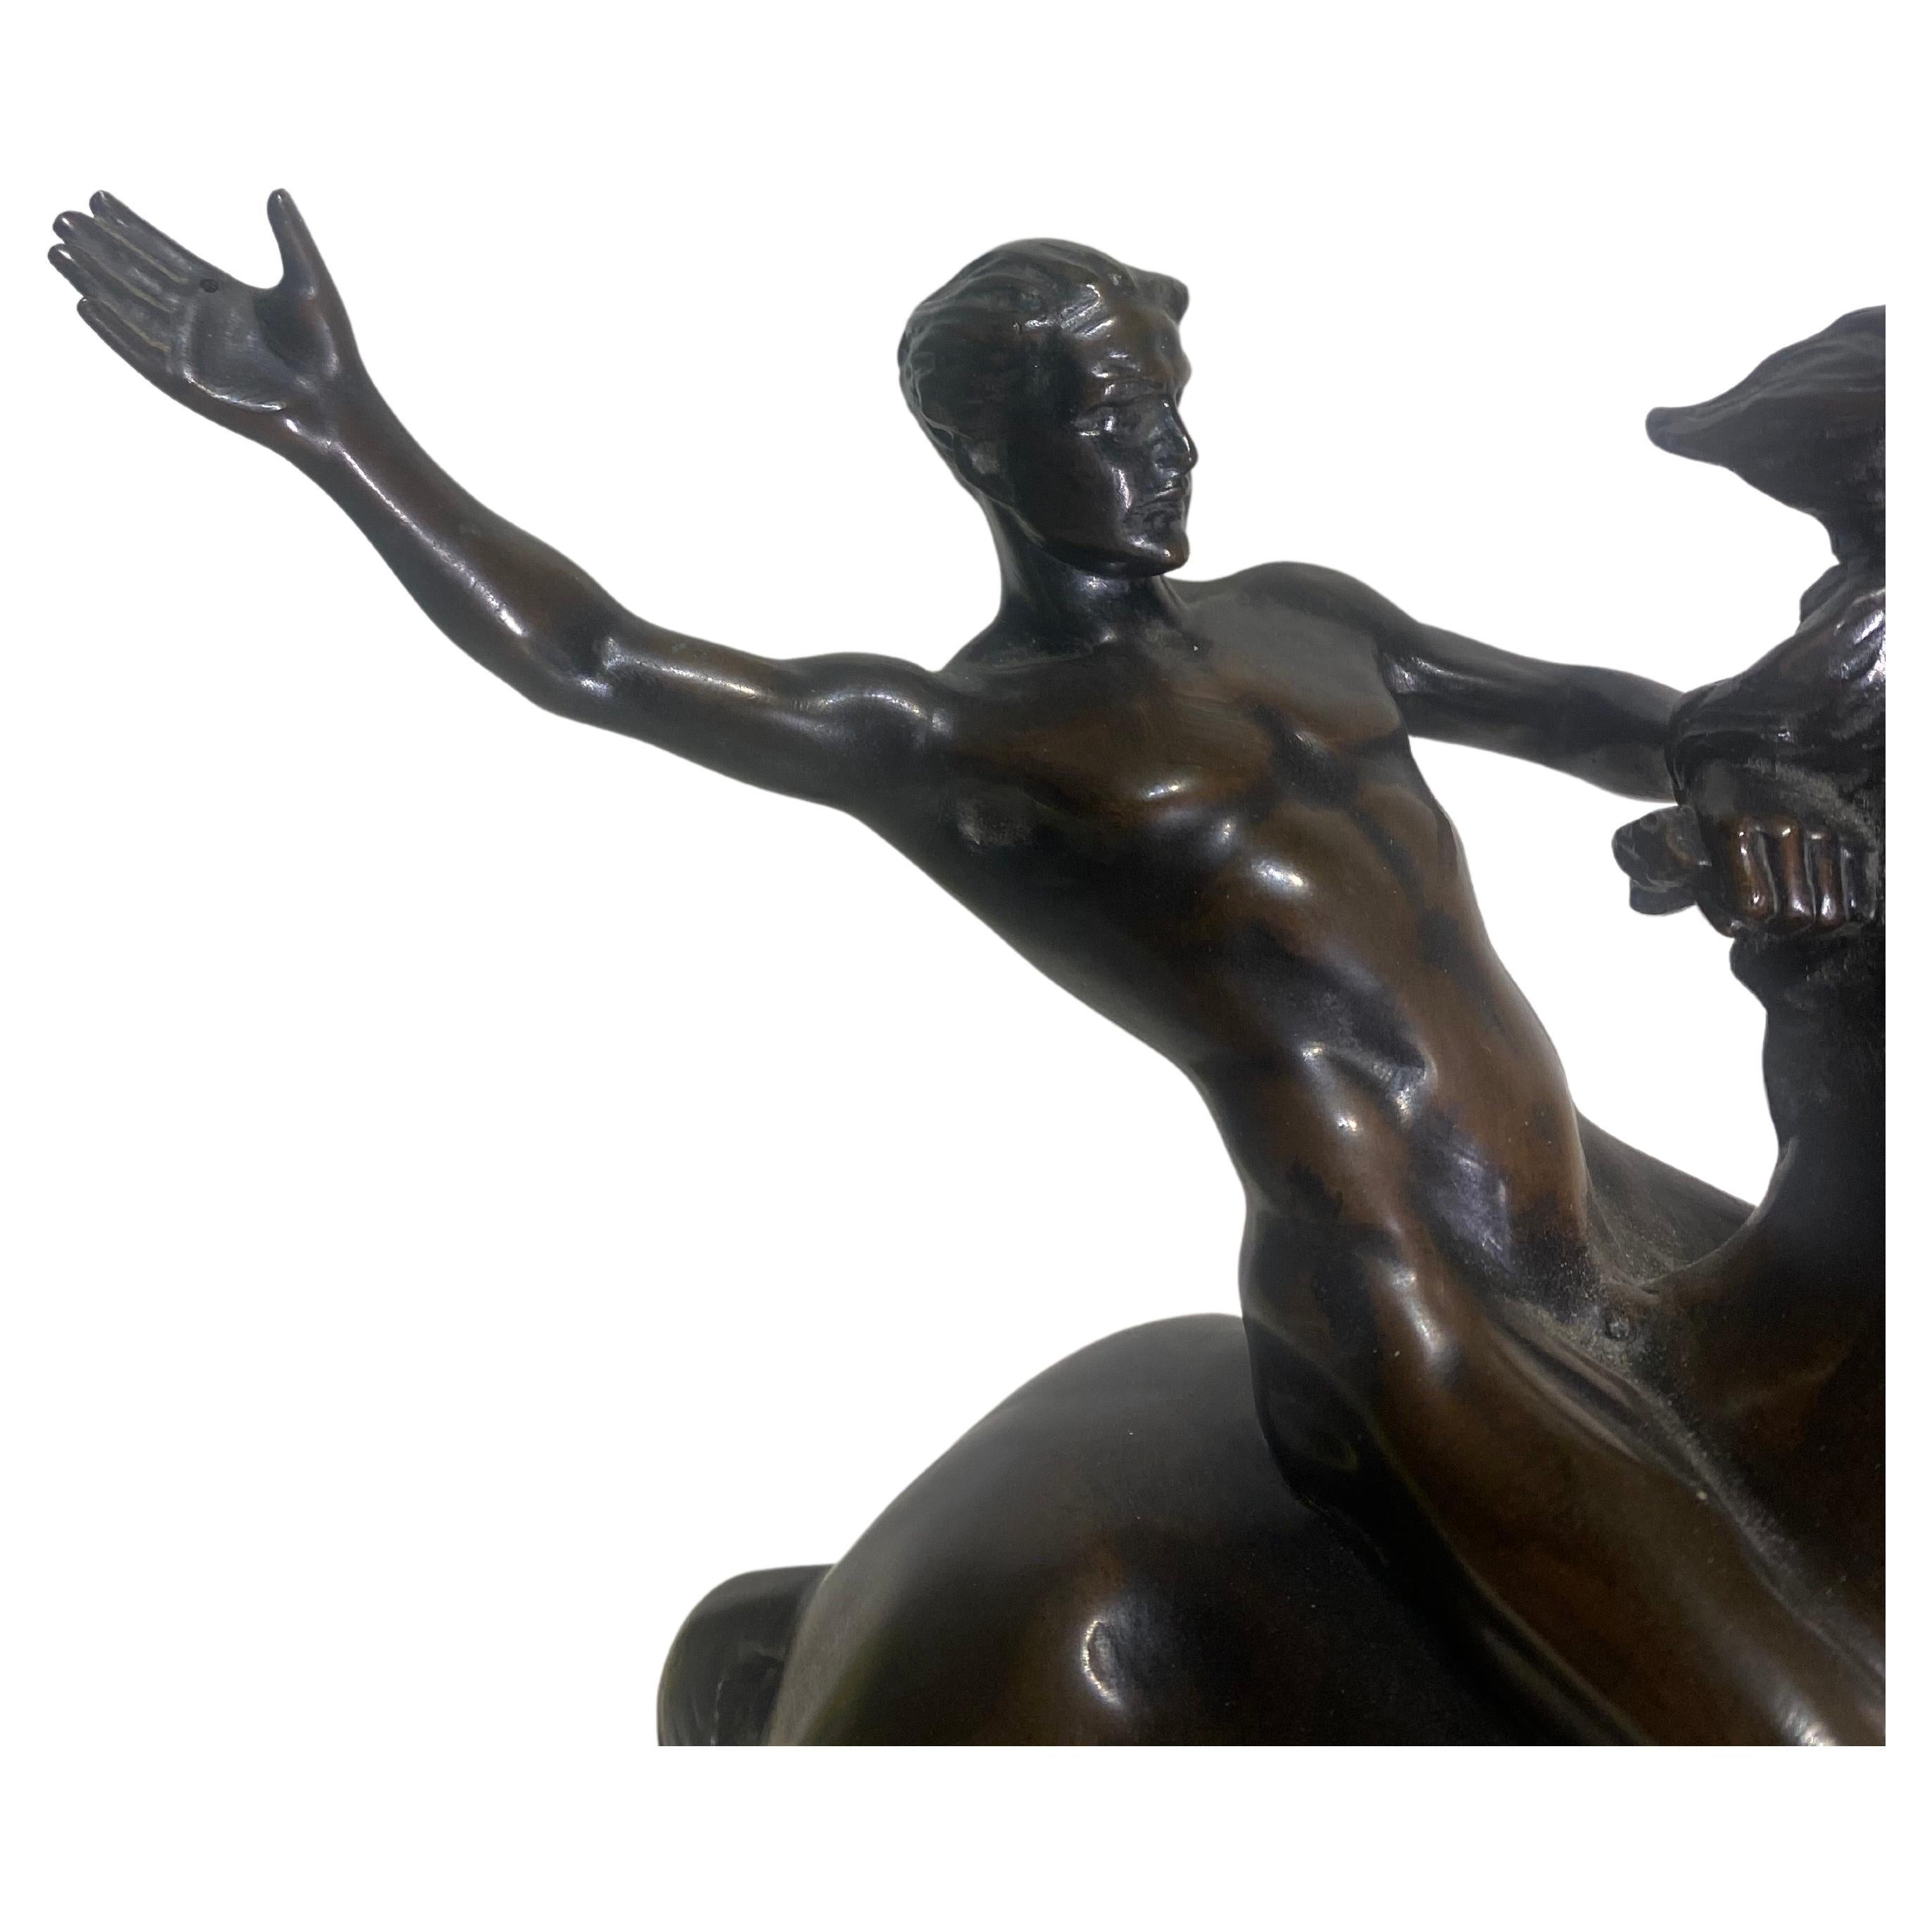 Statue équestre en bronze représentant un homme nu à dos de cheval. Signée en fonte H. Muller. (Hans Muller, Autrichien, 1873-1937) Bronze de haute qualité, bien exécuté, reposant sur un socle en marbre, approximativement 13 